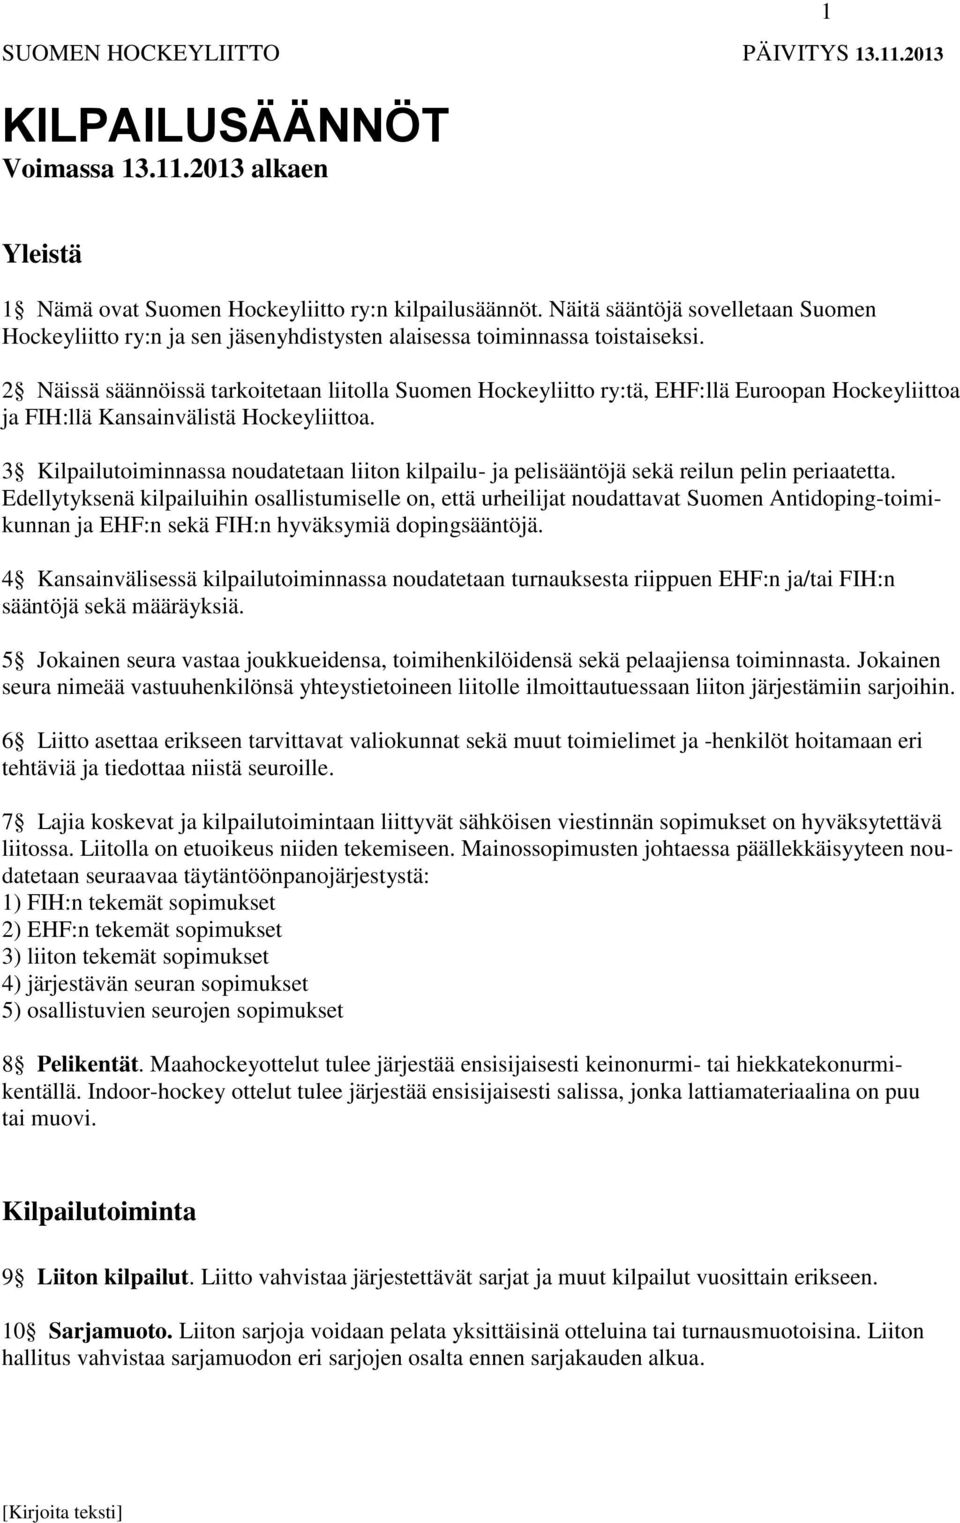 2 Näissä säännöissä tarkoitetaan liitolla Suomen Hockeyliitto ry:tä, EHF:llä Euroopan Hockeyliittoa ja FIH:llä Kansainvälistä Hockeyliittoa.